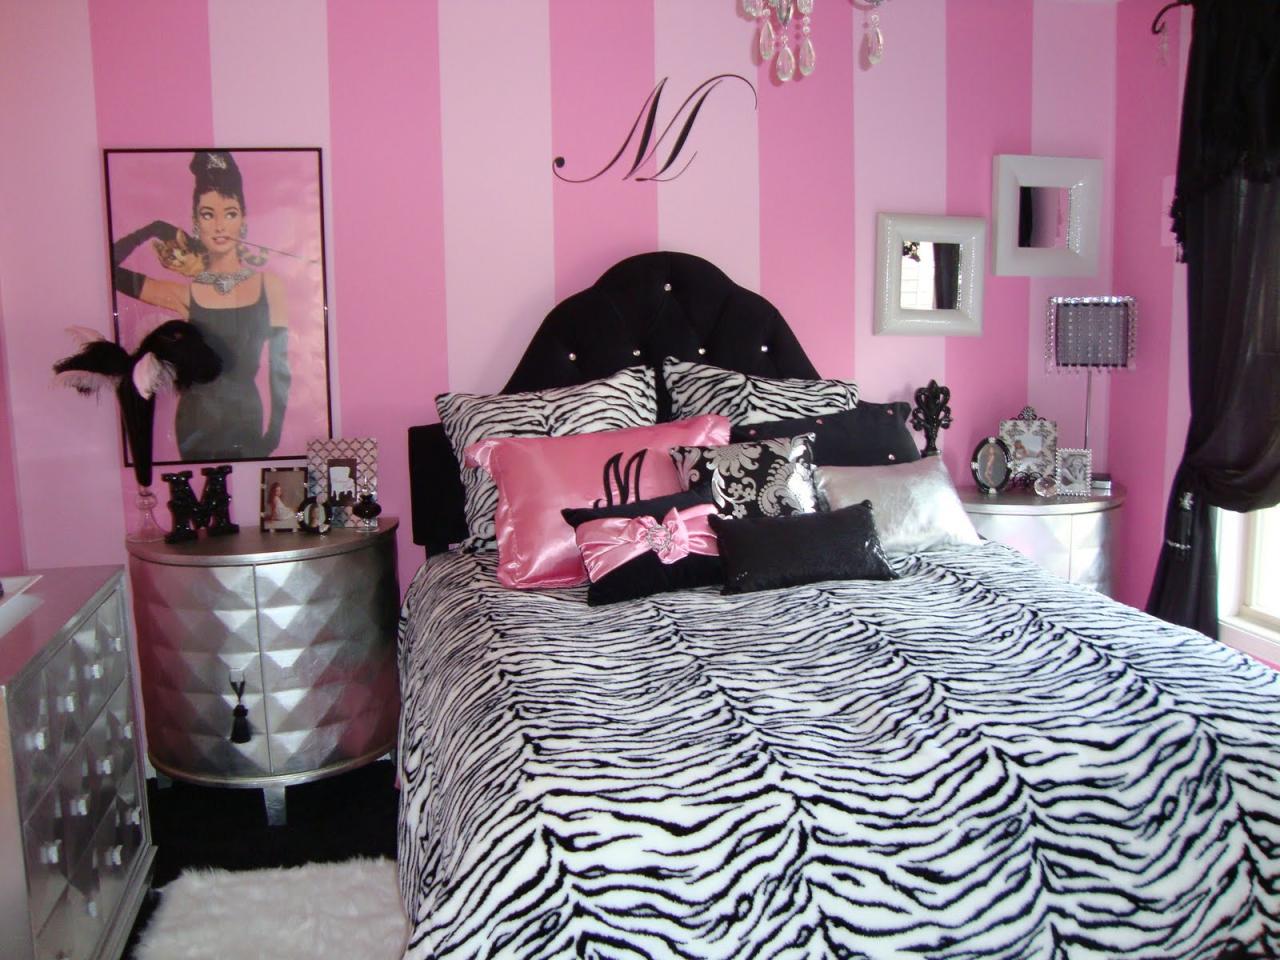 Hollywood Glamour: Celebrity-Inspired Bedroom Design Trends